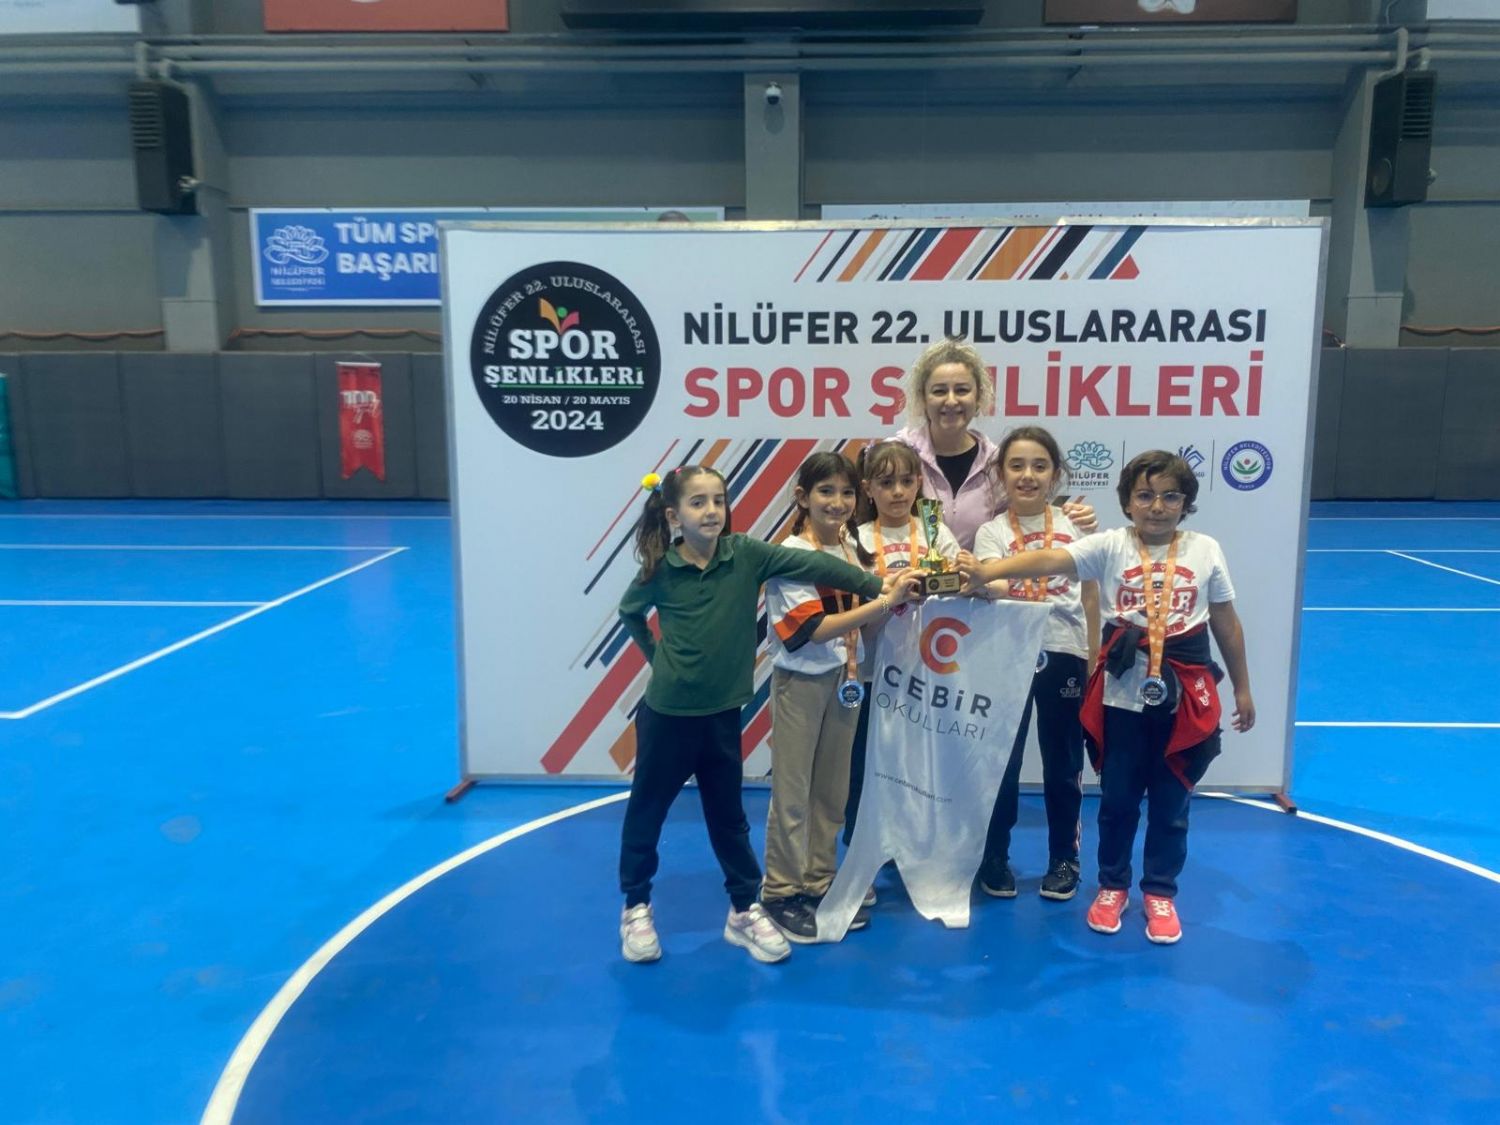 22. Nilfer Spor enlikleri Badminton Turnuvas Kzlarmz 2. Oldu!!